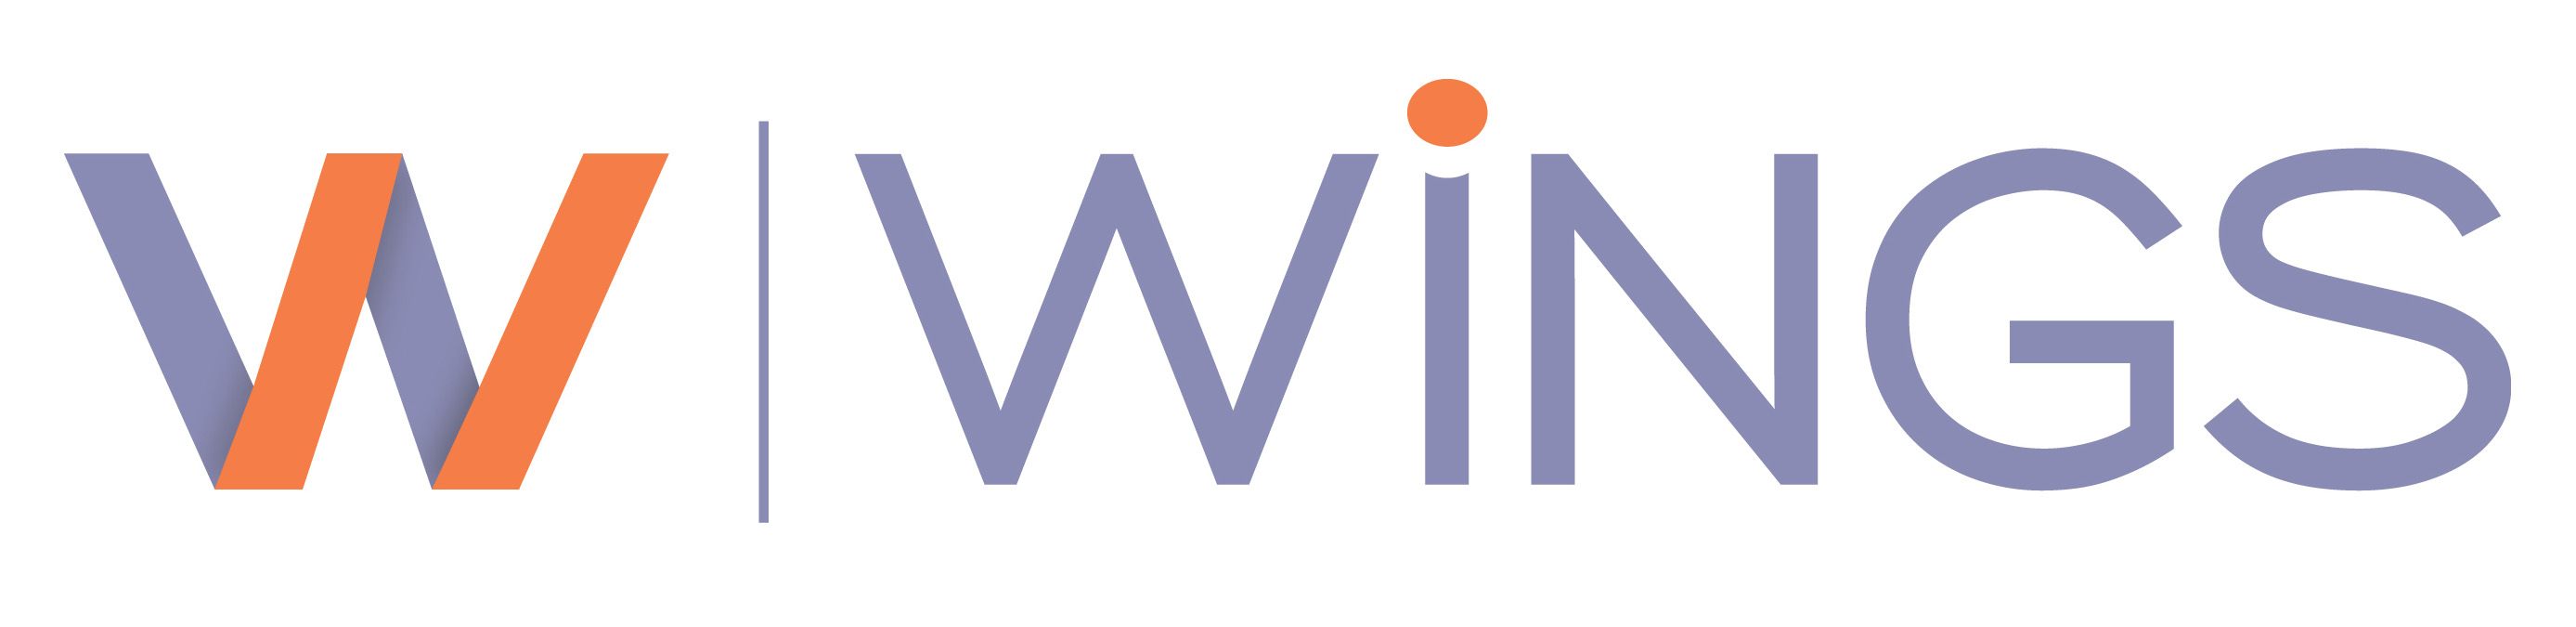 wings logo (2).jpg